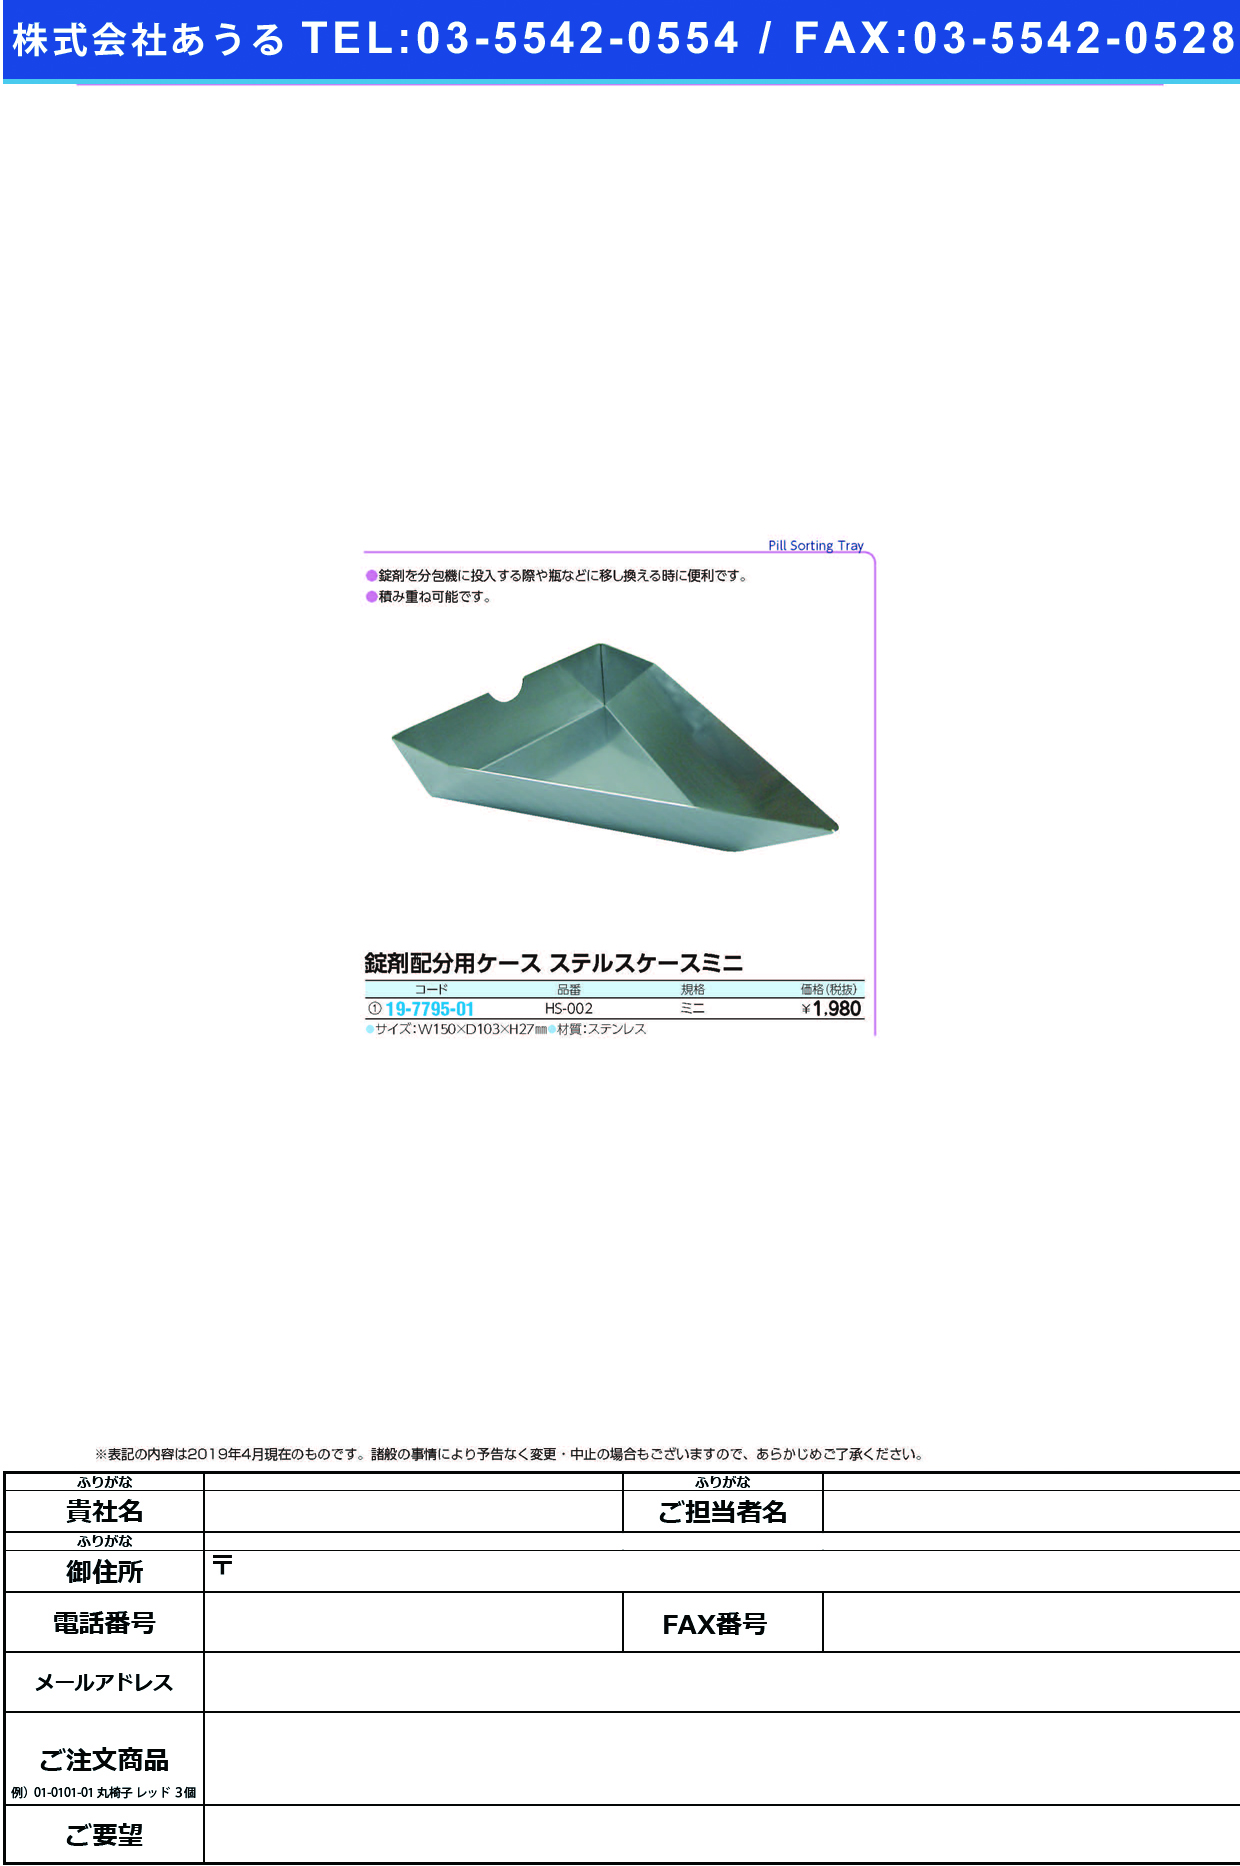 (19-7795-01)ステルスケースミニ HS-002 ｽﾃﾙｽｹｰｽﾐﾆ(大同化工)【1個単位】【2019年カタログ商品】